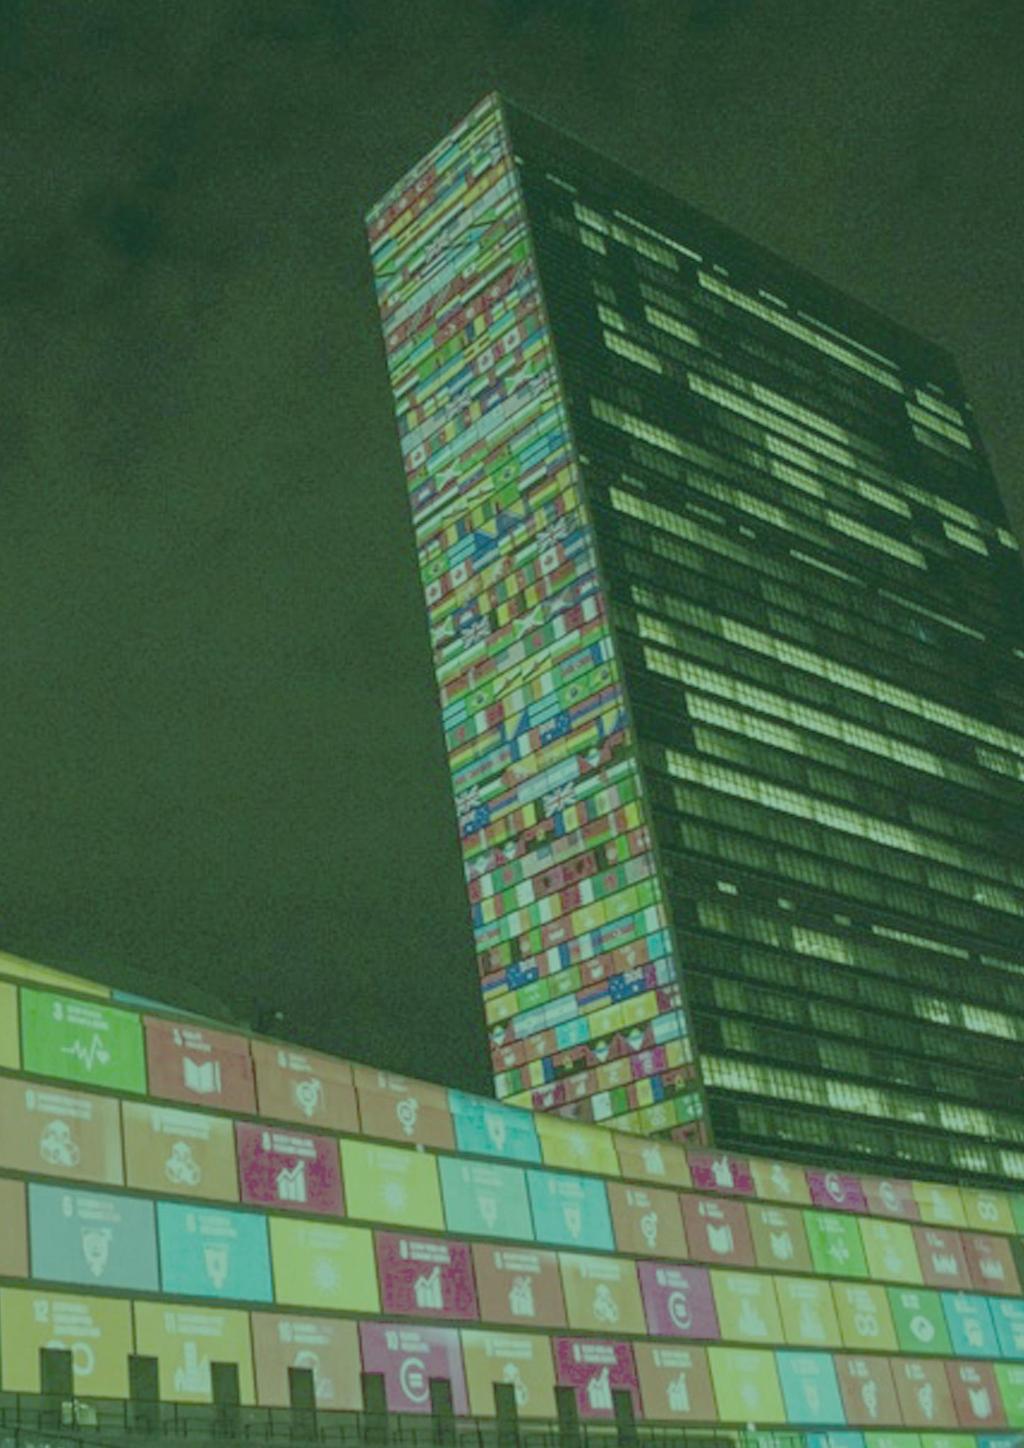 FORORD Med sine 17 mål for bæredygtig udvikling, og sin tilslutning fra 193 lande, udgør FN s verdensmål den største og mest ambitiøse fælles kontrakt, der er skabt for verdens fremtid.